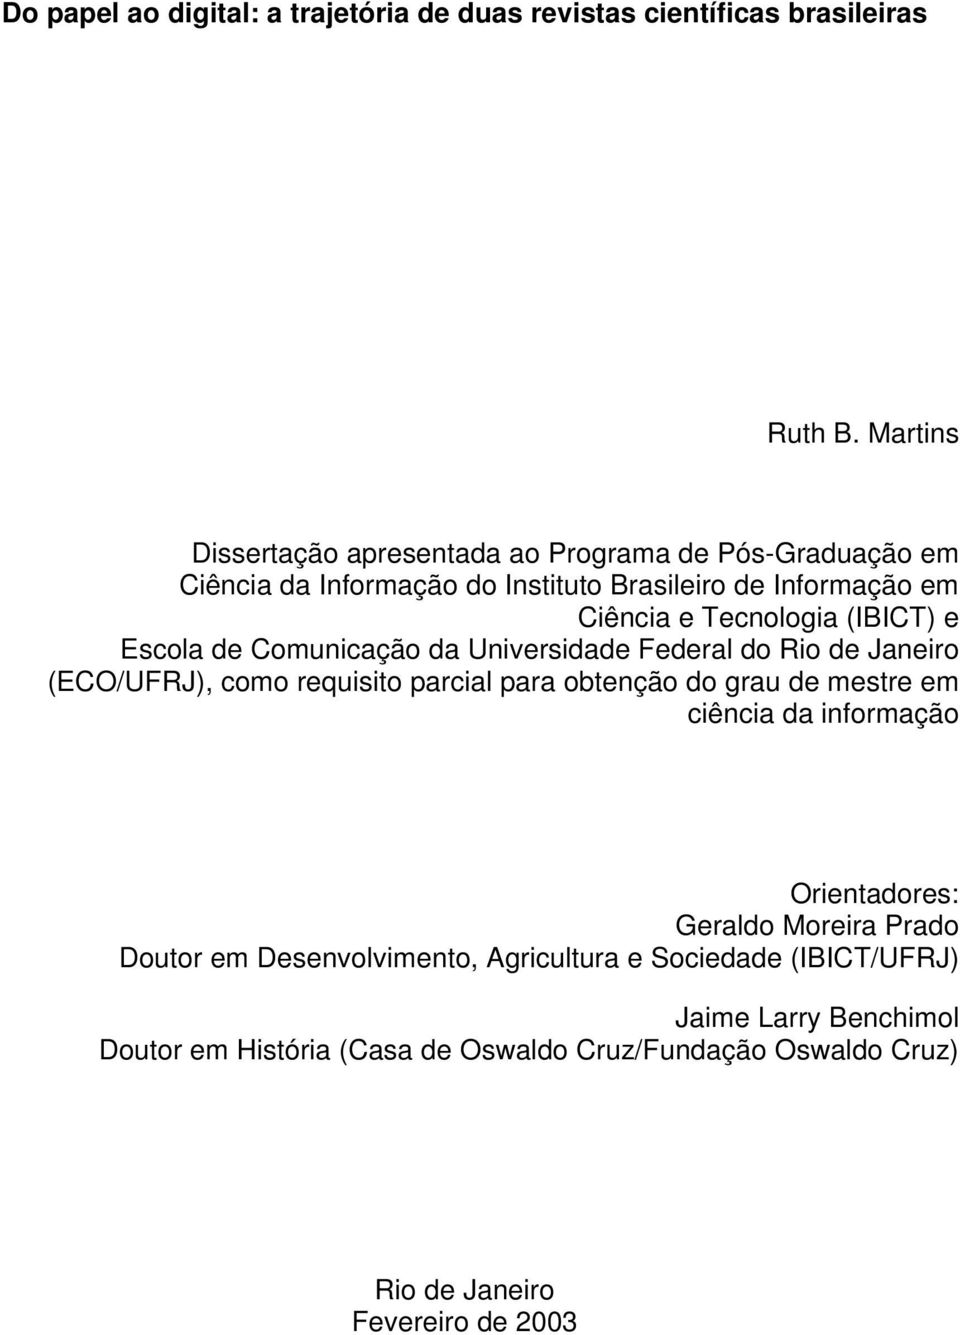 (IBICT) e Escola de Comunicação da Universidade Federal do Rio de Janeiro (ECO/UFRJ), como requisito parcial para obtenção do grau de mestre em ciência